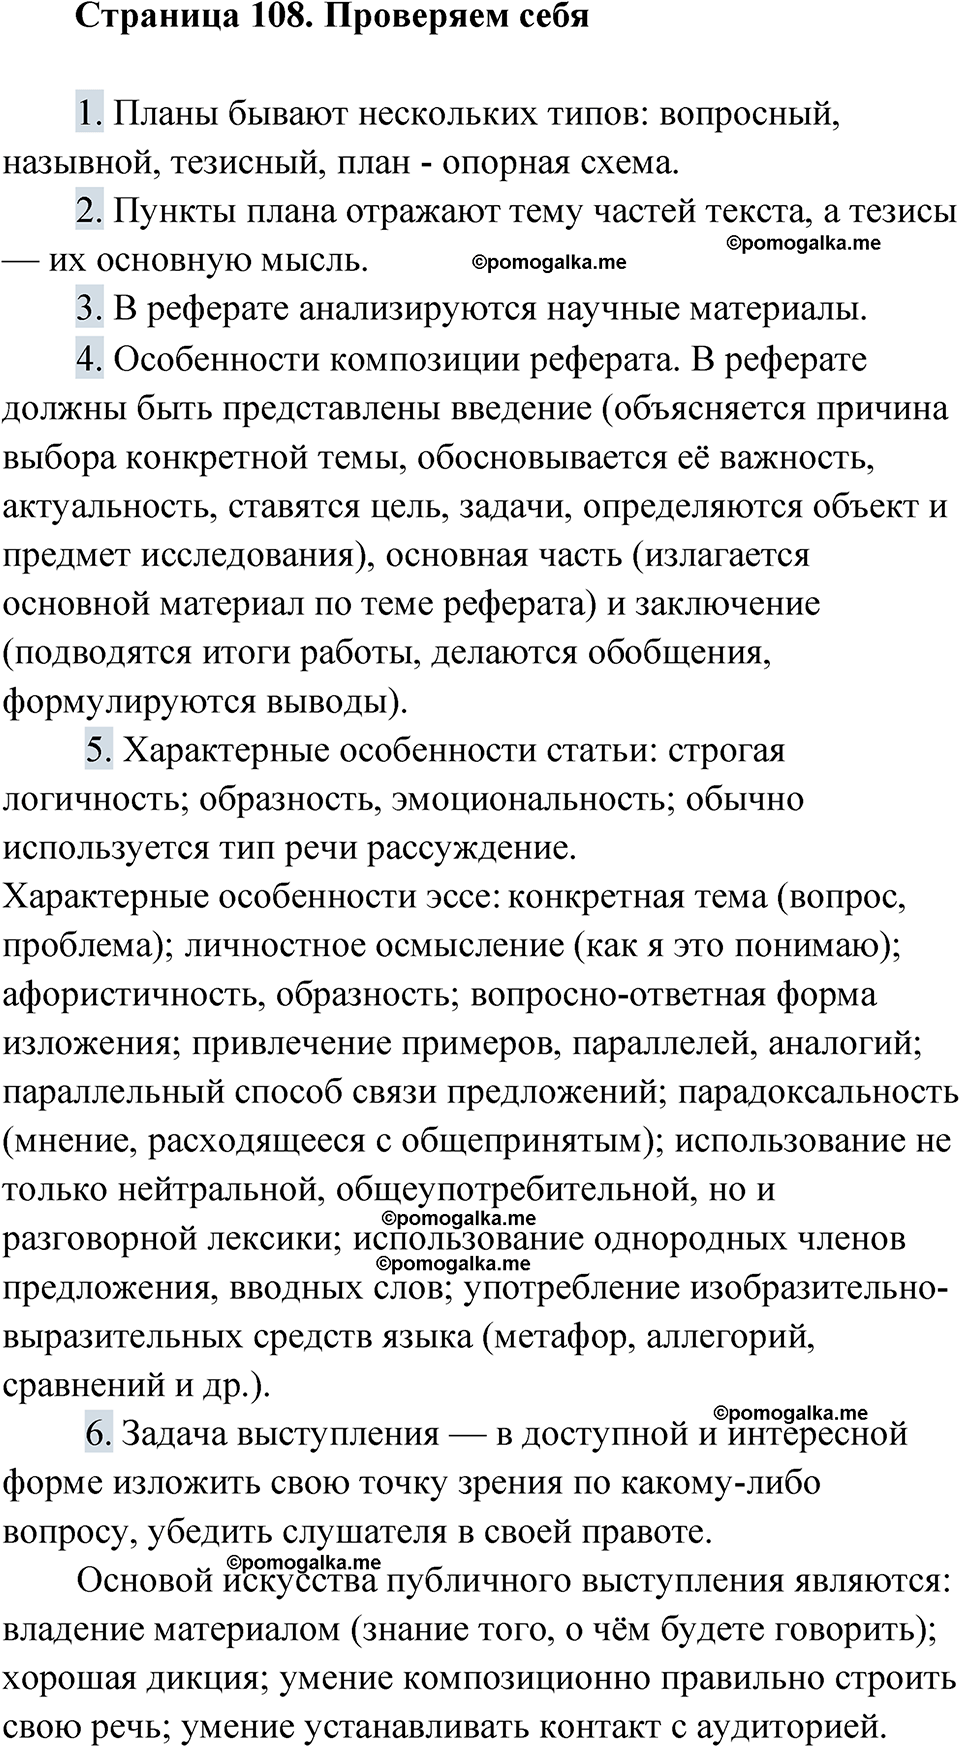 страница 108 Проверяем себя русский язык 9 класс Быстрова 1 часть 2022 год